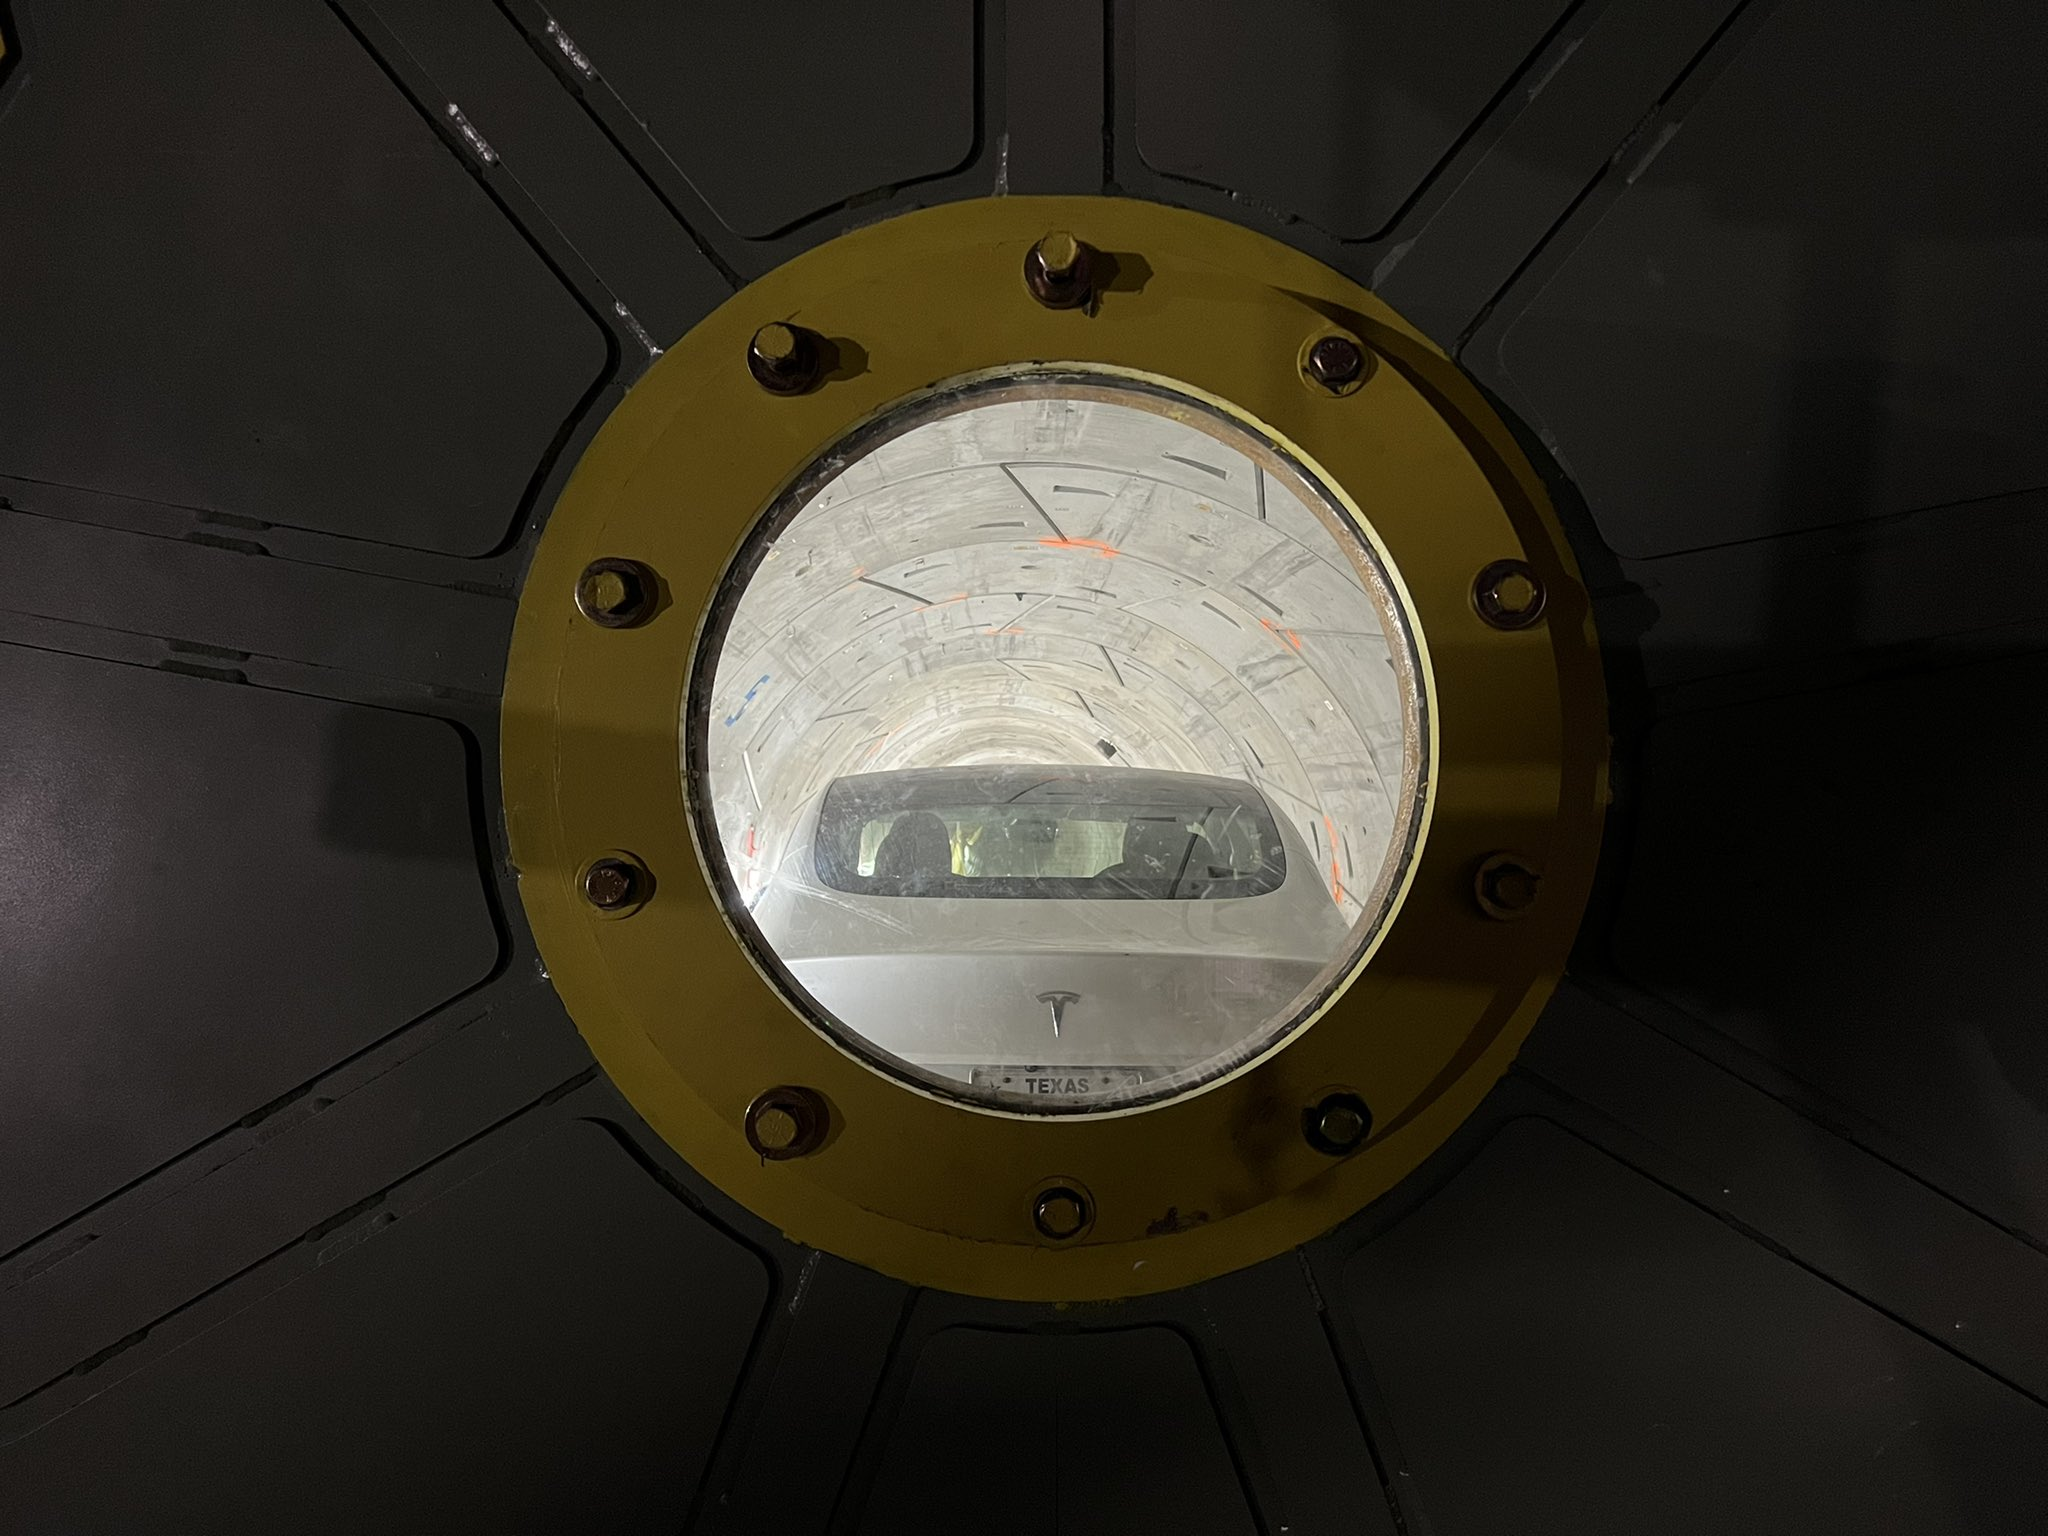 Фото с испытаний транспортной системы Hyperloop. Фото © Twitter / boringcompany